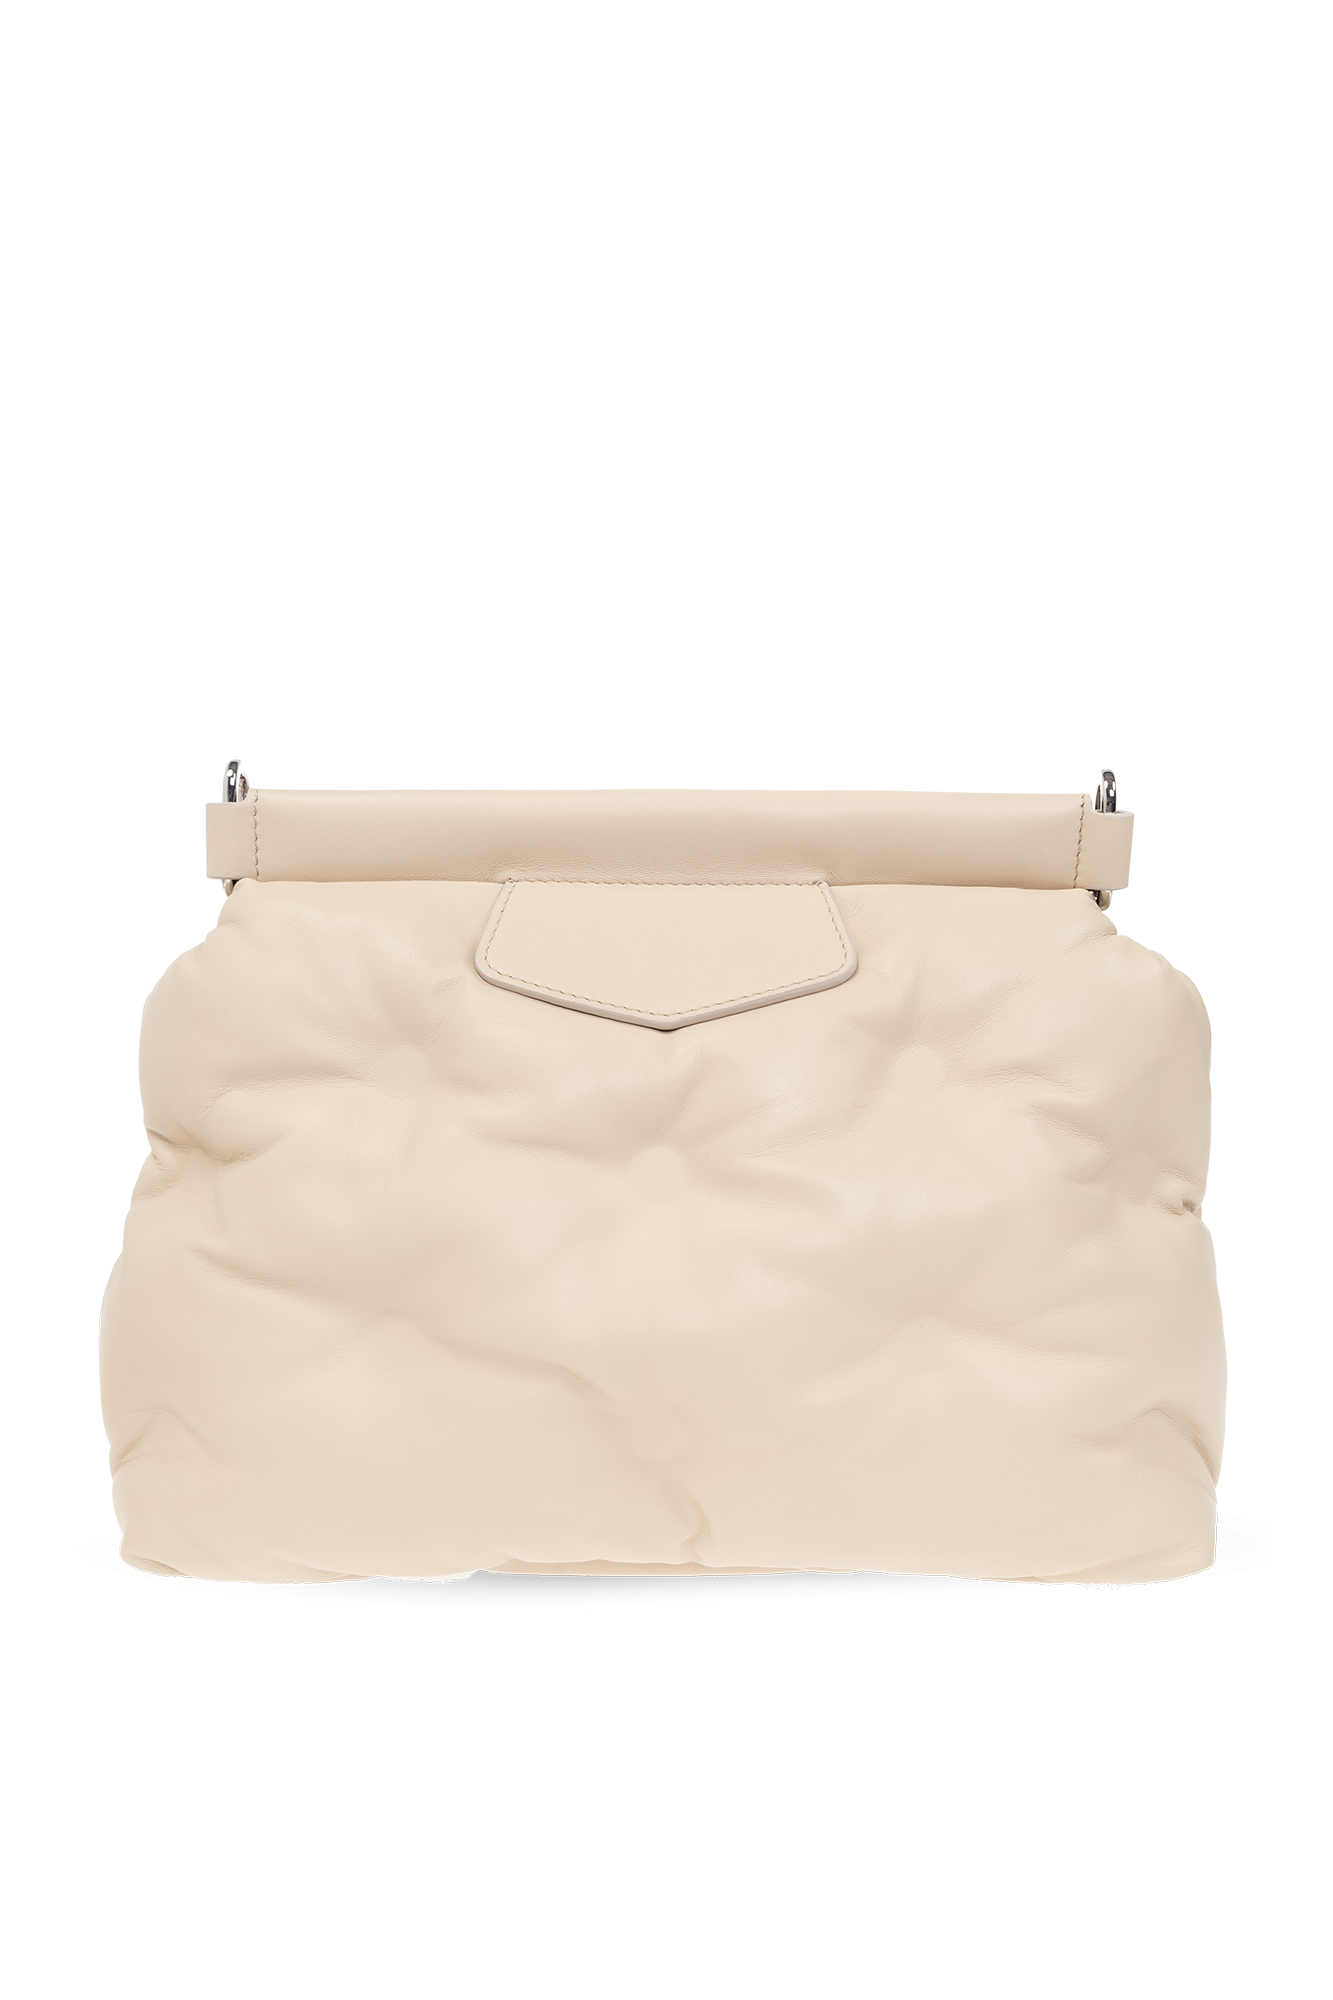 Maison Margiela ‘Glam Slam’ shoulder bag